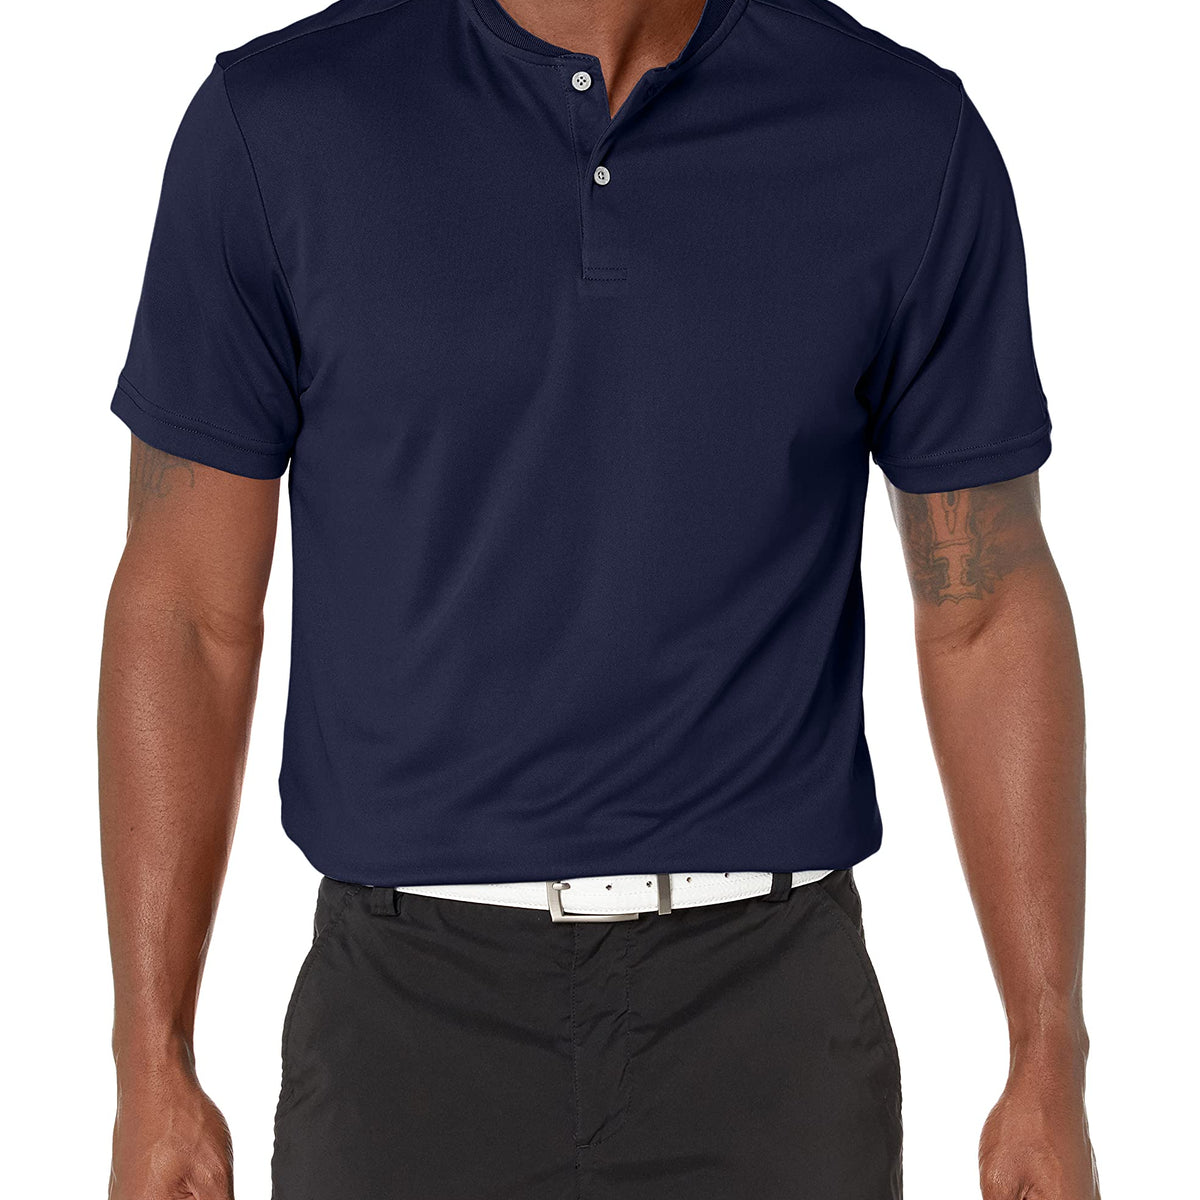 PGA TOUR Men's Pique Short Sleeve Golf Polo Shirt with New